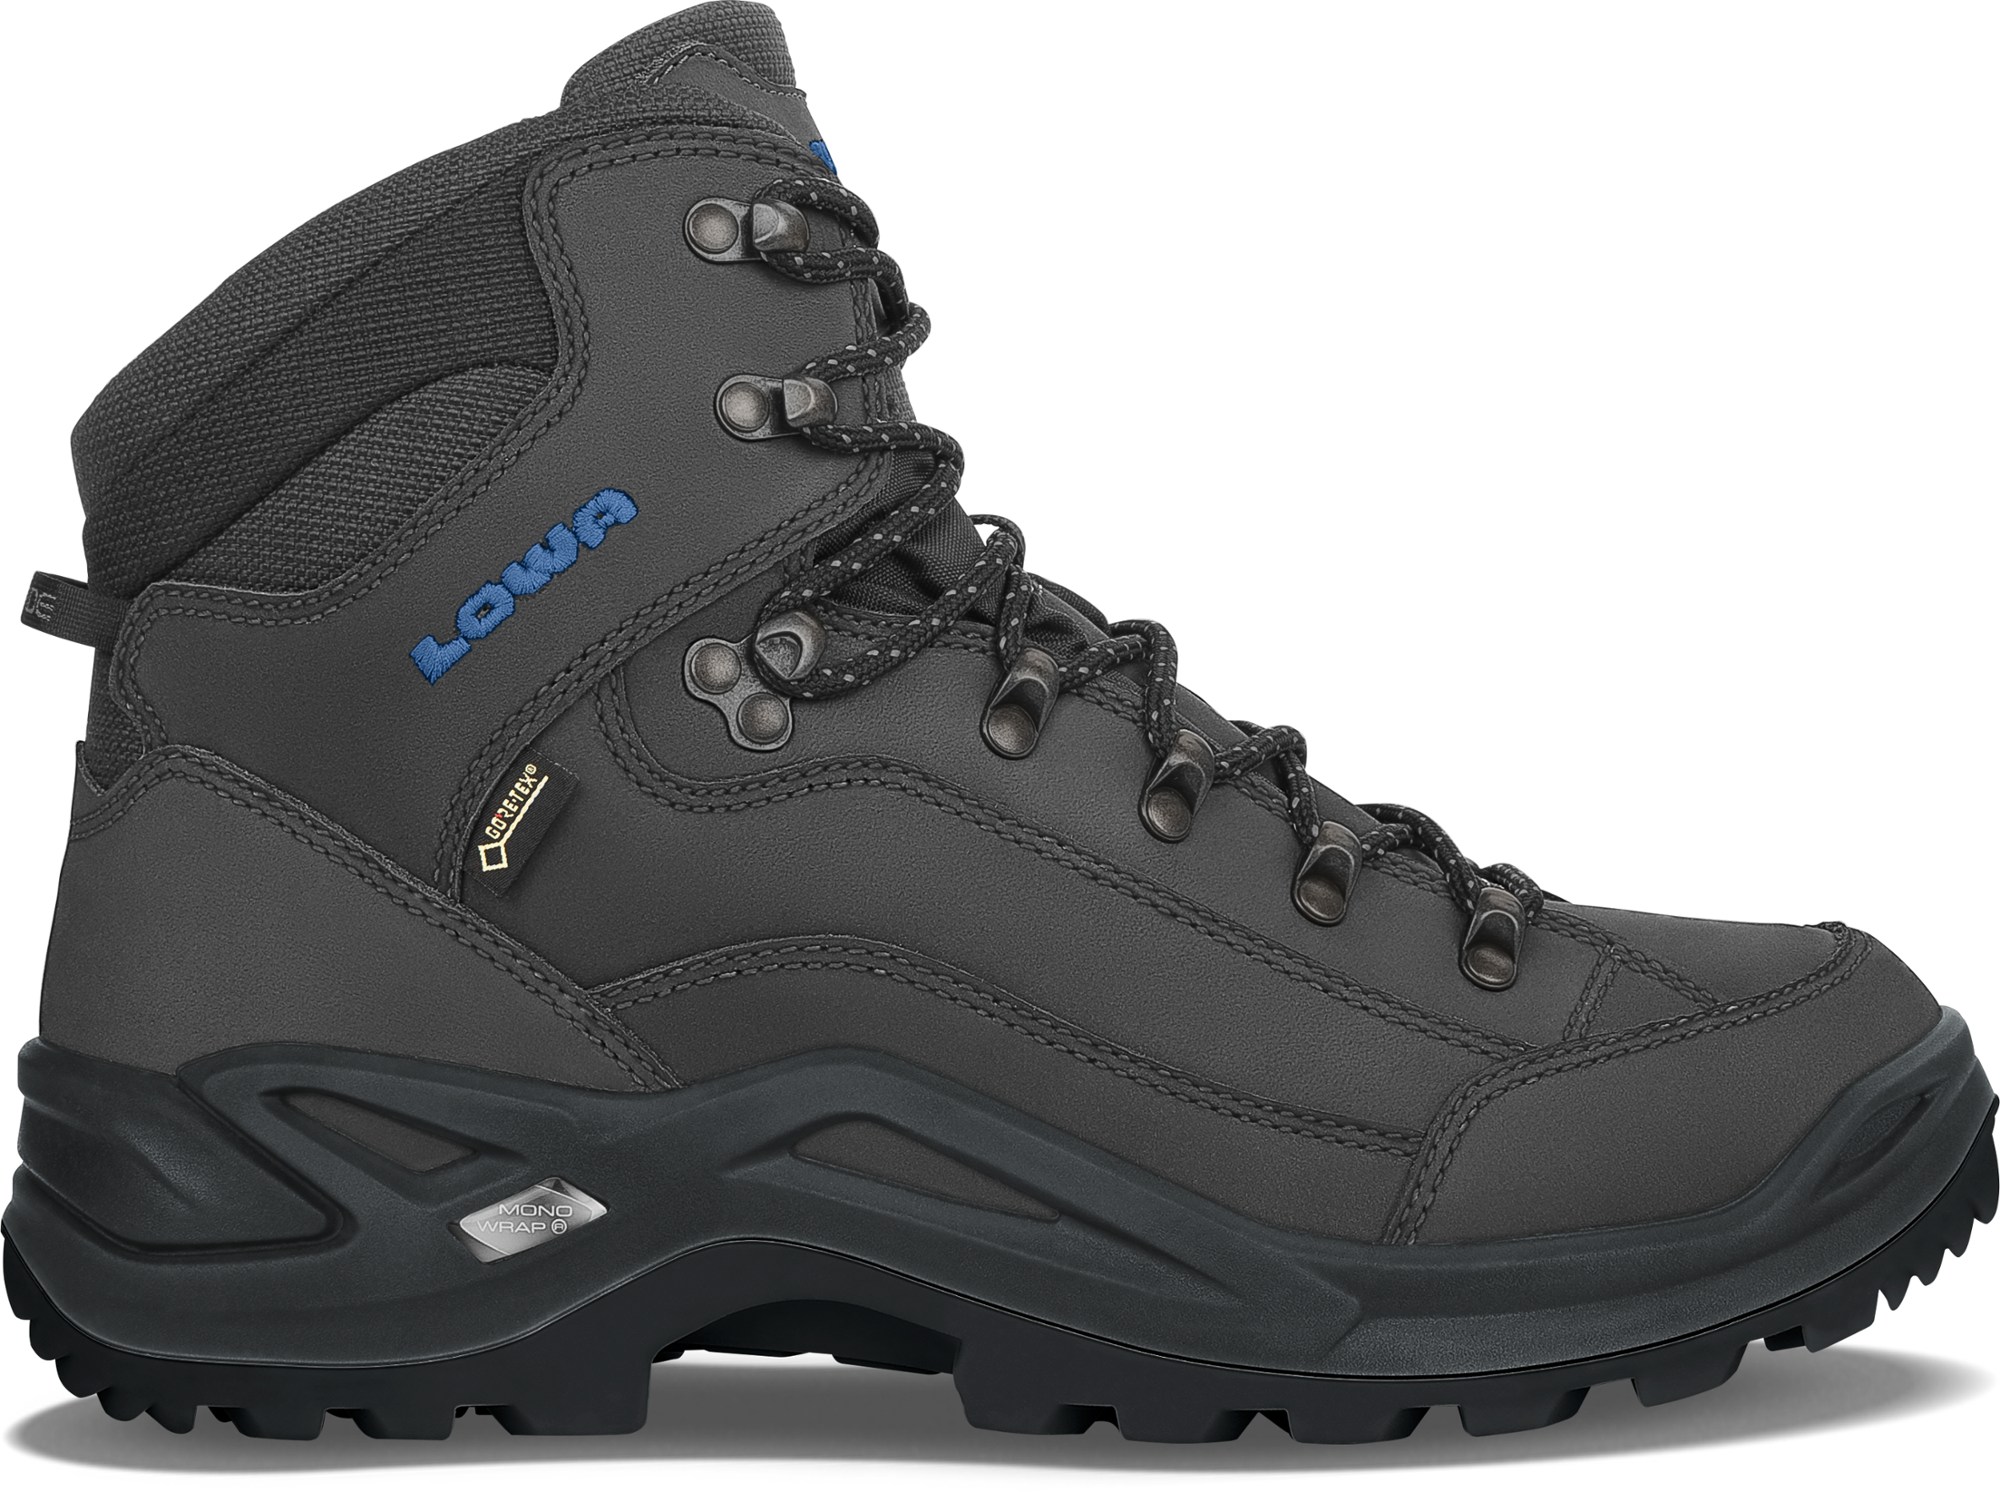 Походные ботинки Renegade GTX Mid — мужские Lowa, серый мужские водонепроницаемые походные ботинки черные ботинки для походов и горного туризма обувь для улицы для альпинизма для зимы 2022